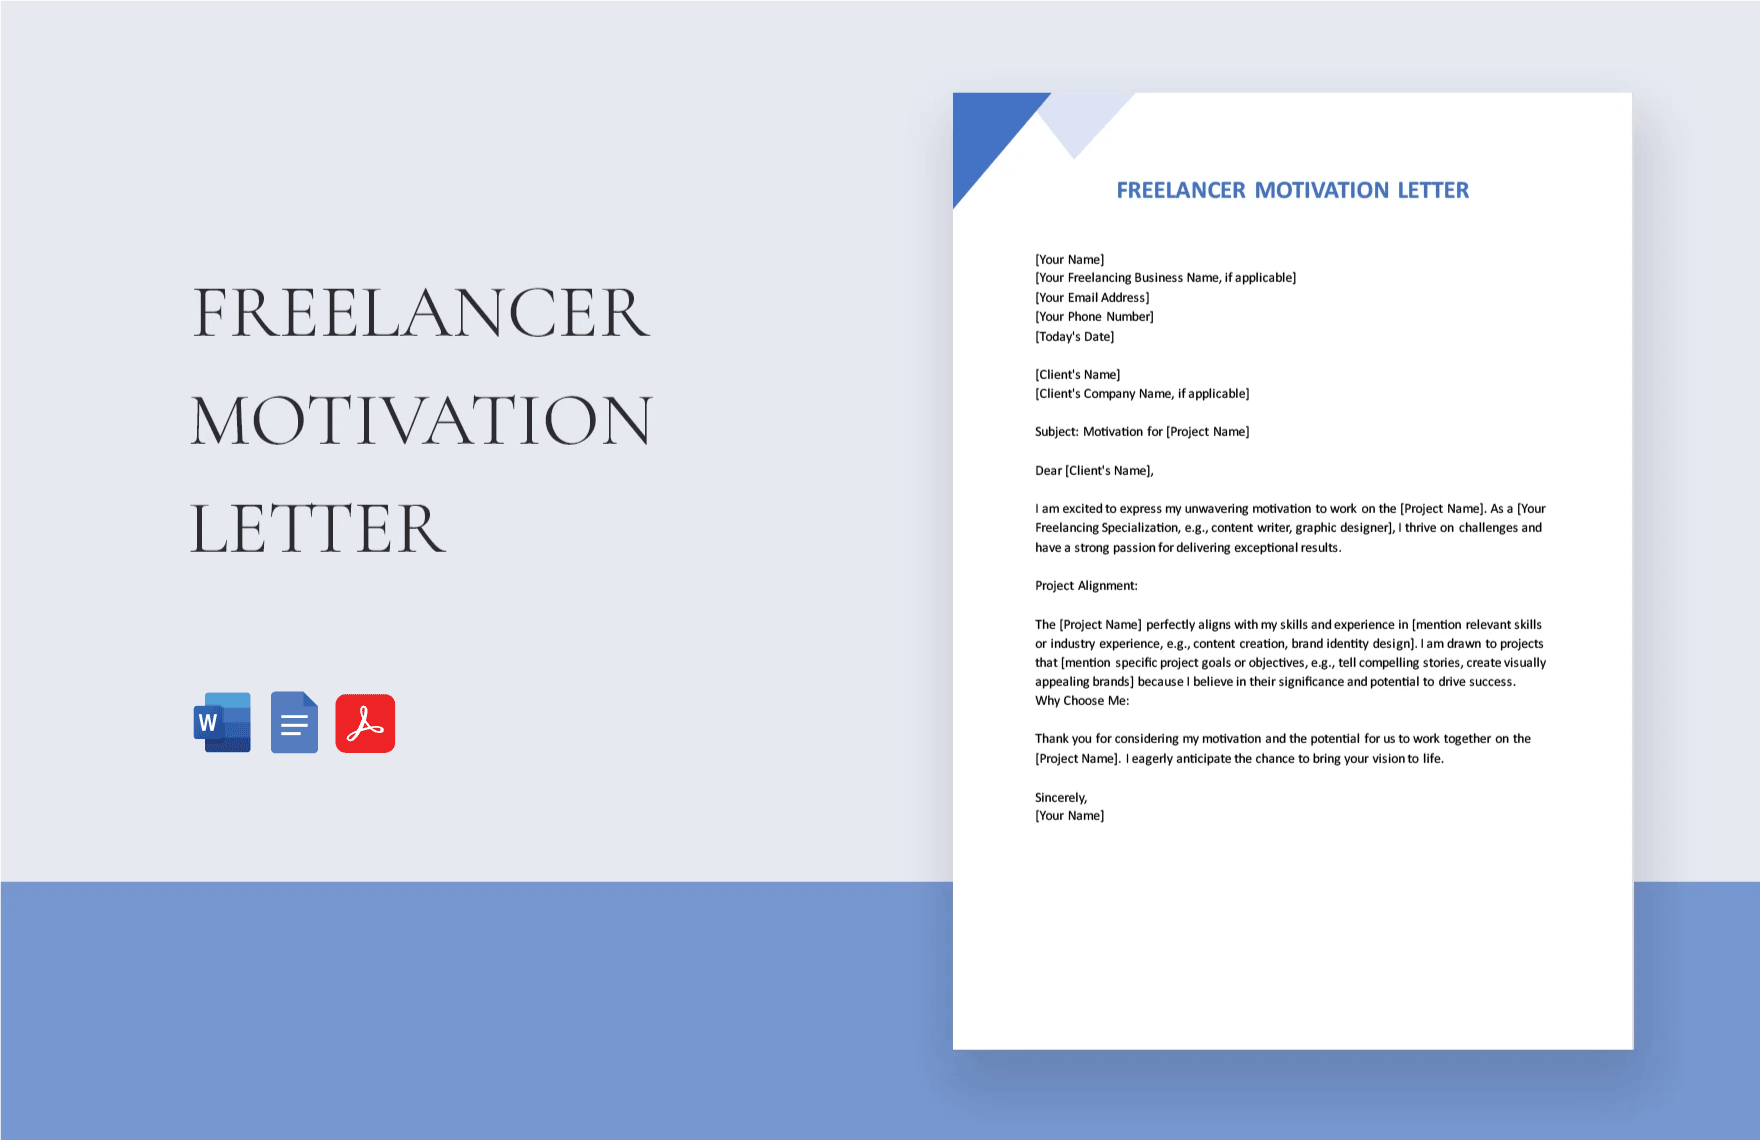 Freelancer Motivation Letter in Word, Google Docs, PDF